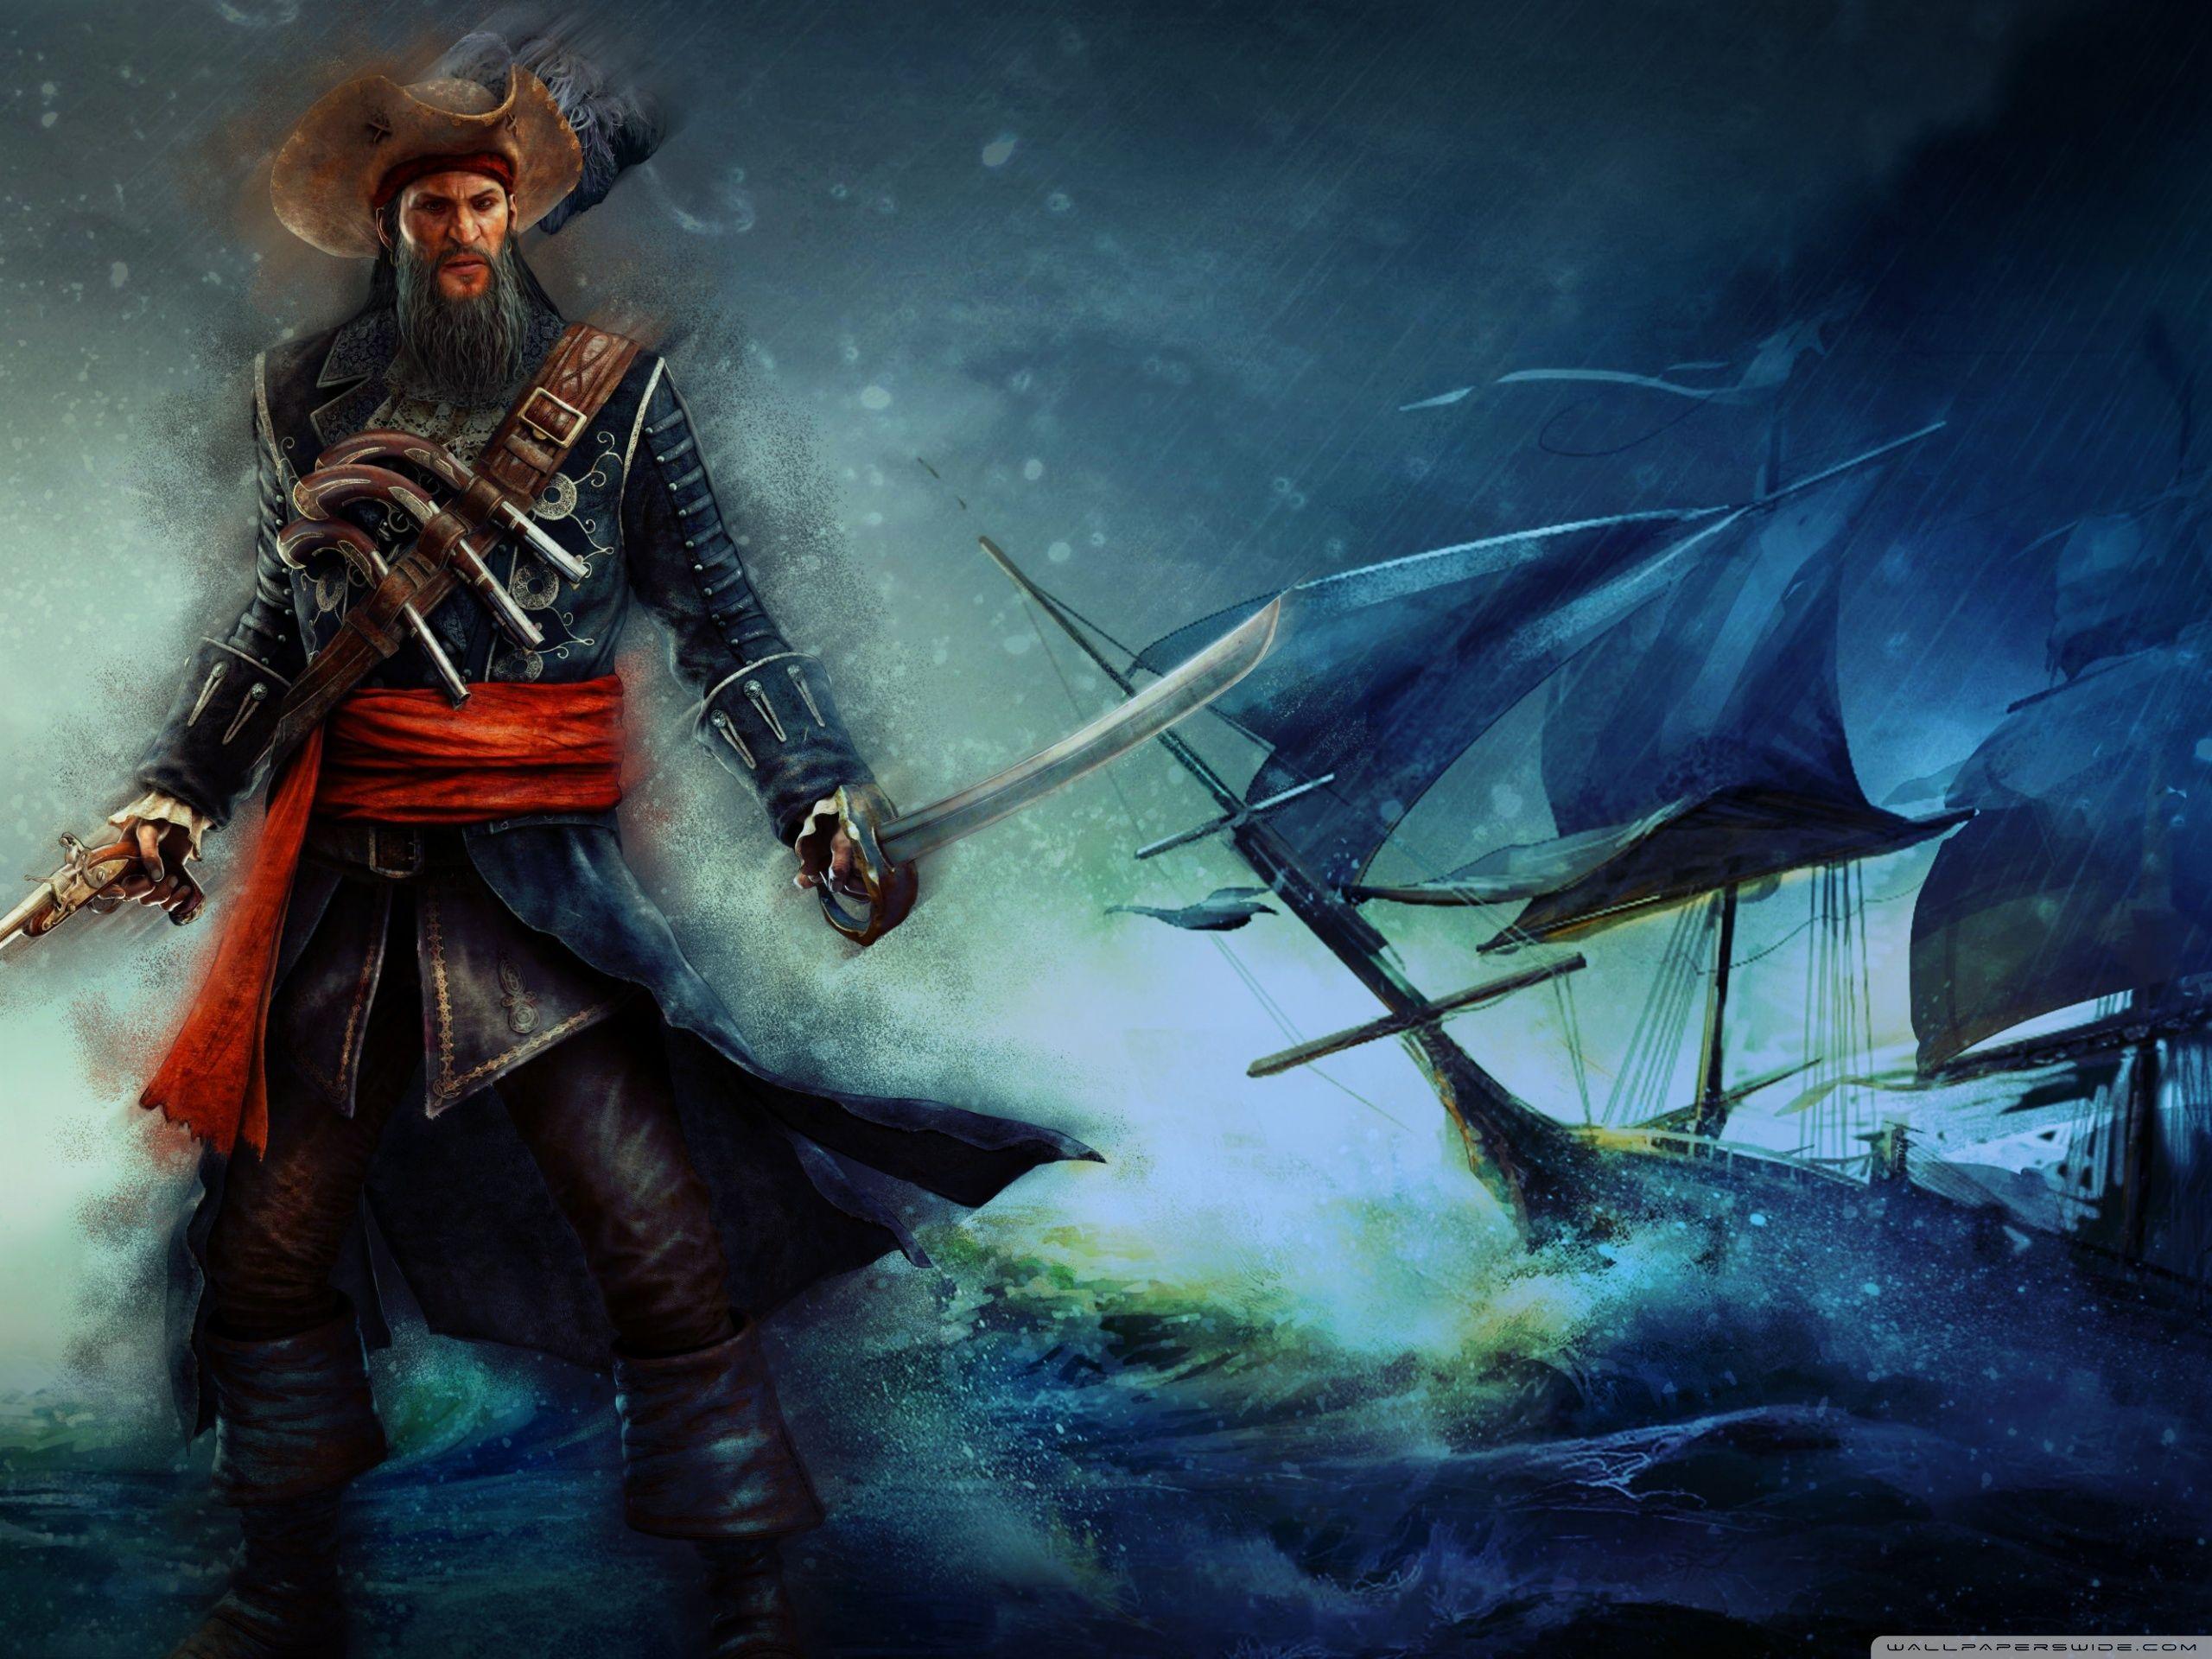 Черная про пиратов. Ассасин Крид 4 черная борода арт. Ассасин пират. Ассасин пиратского Карибского моря. Ассасин Крид пираты.